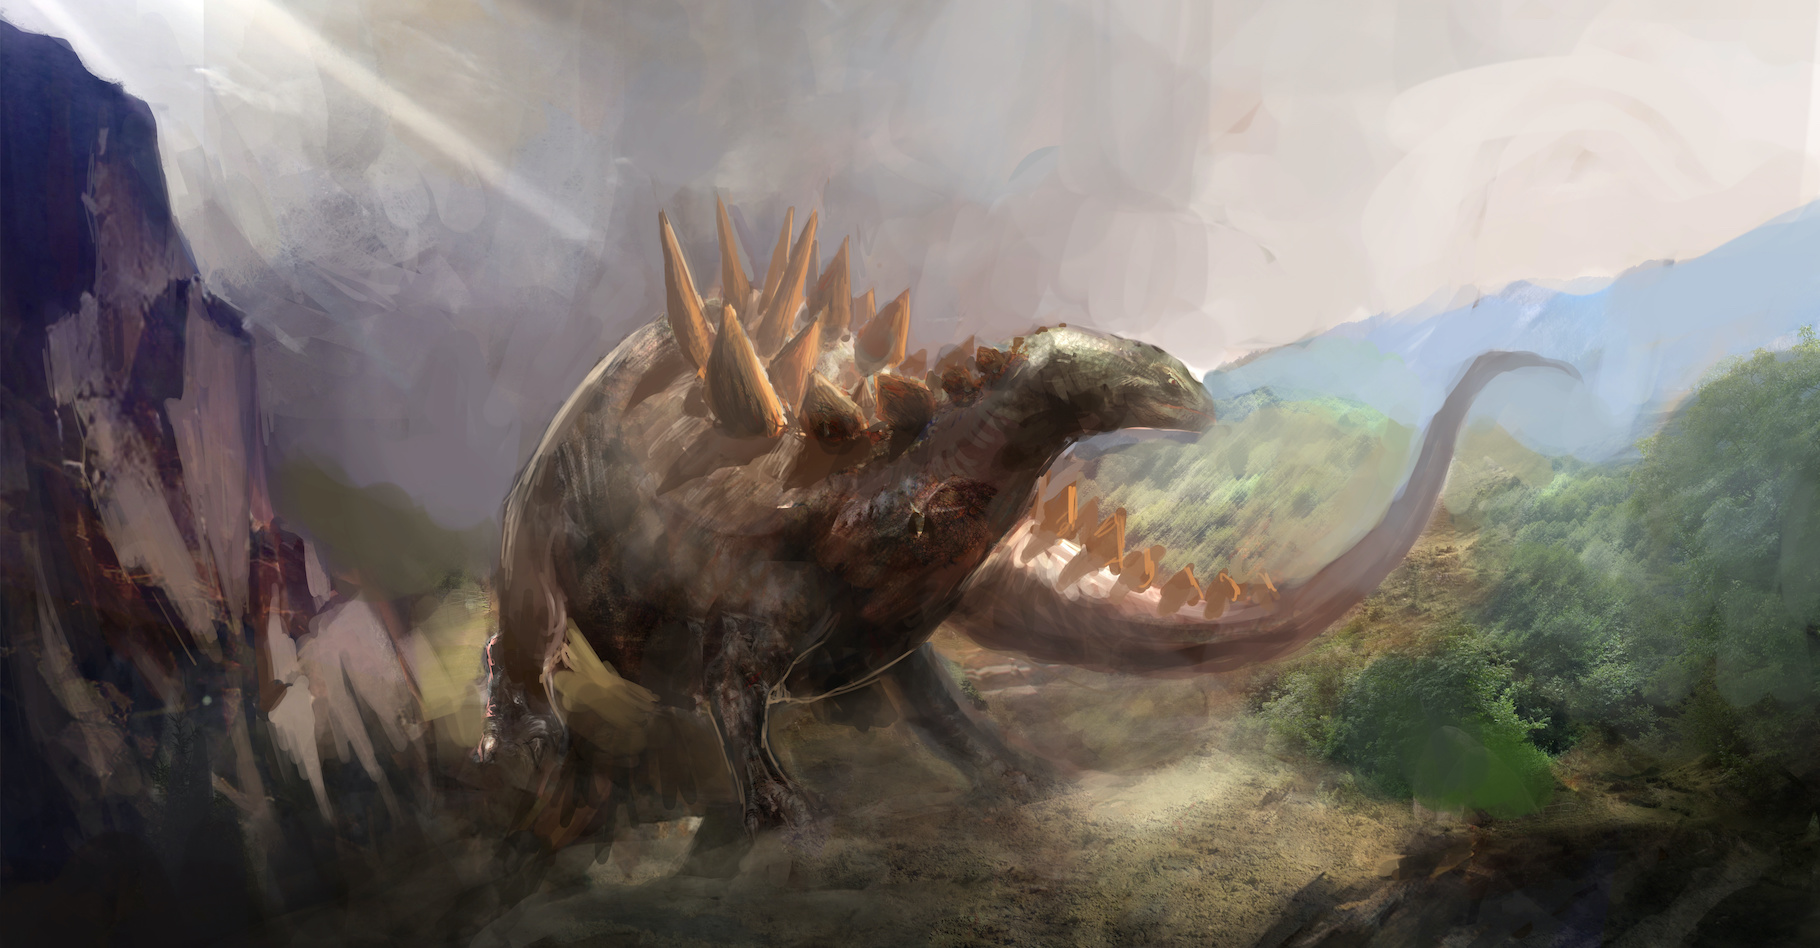 Les stégosaures étaient des dinosaures herbivores de grande taille. Des chercheurs viennent d’en identifier l’empreinte la plus petite jamais découverte. Celle d’un bébé stégosaure pas plus grand qu’un chat. © vukkostic, Adobe Stock